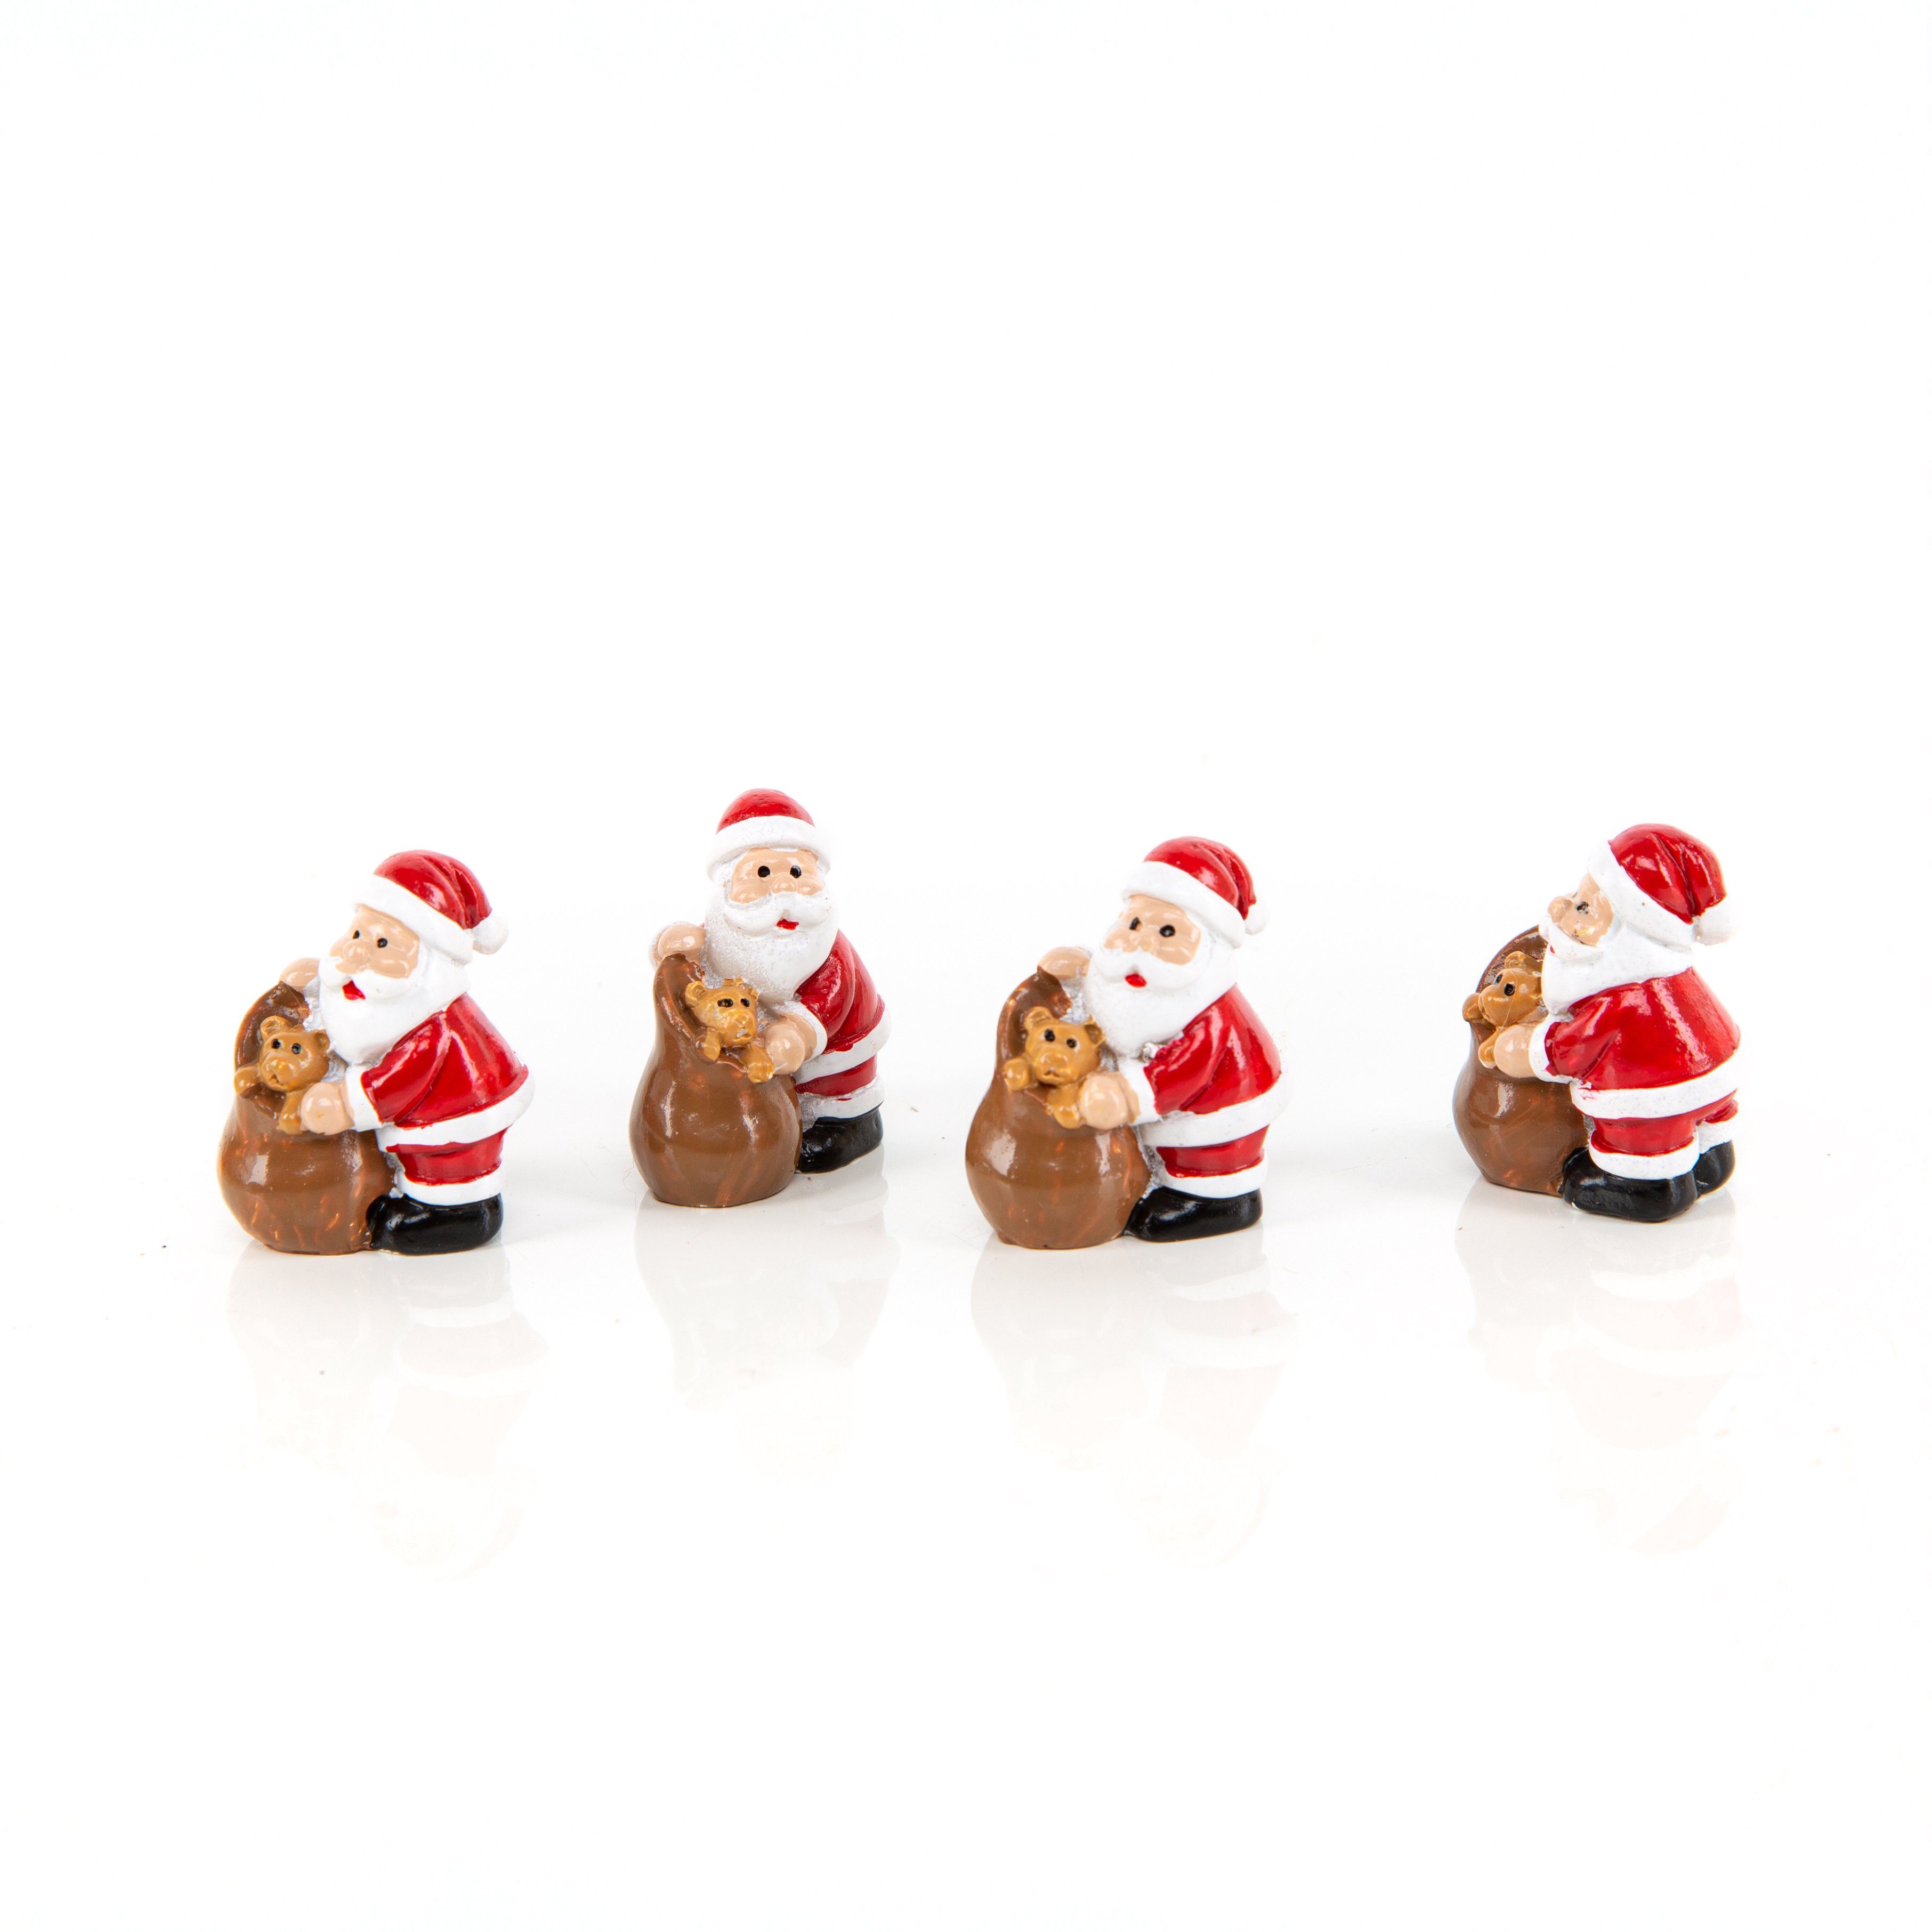 Logbuch-Verlag Weihnachtsfigur 4 Nikolaus Figuren mit Teddybär Weihnachtsmann 3cm (Set, 4 St), Santa Claus mit Sackerl und Teddy